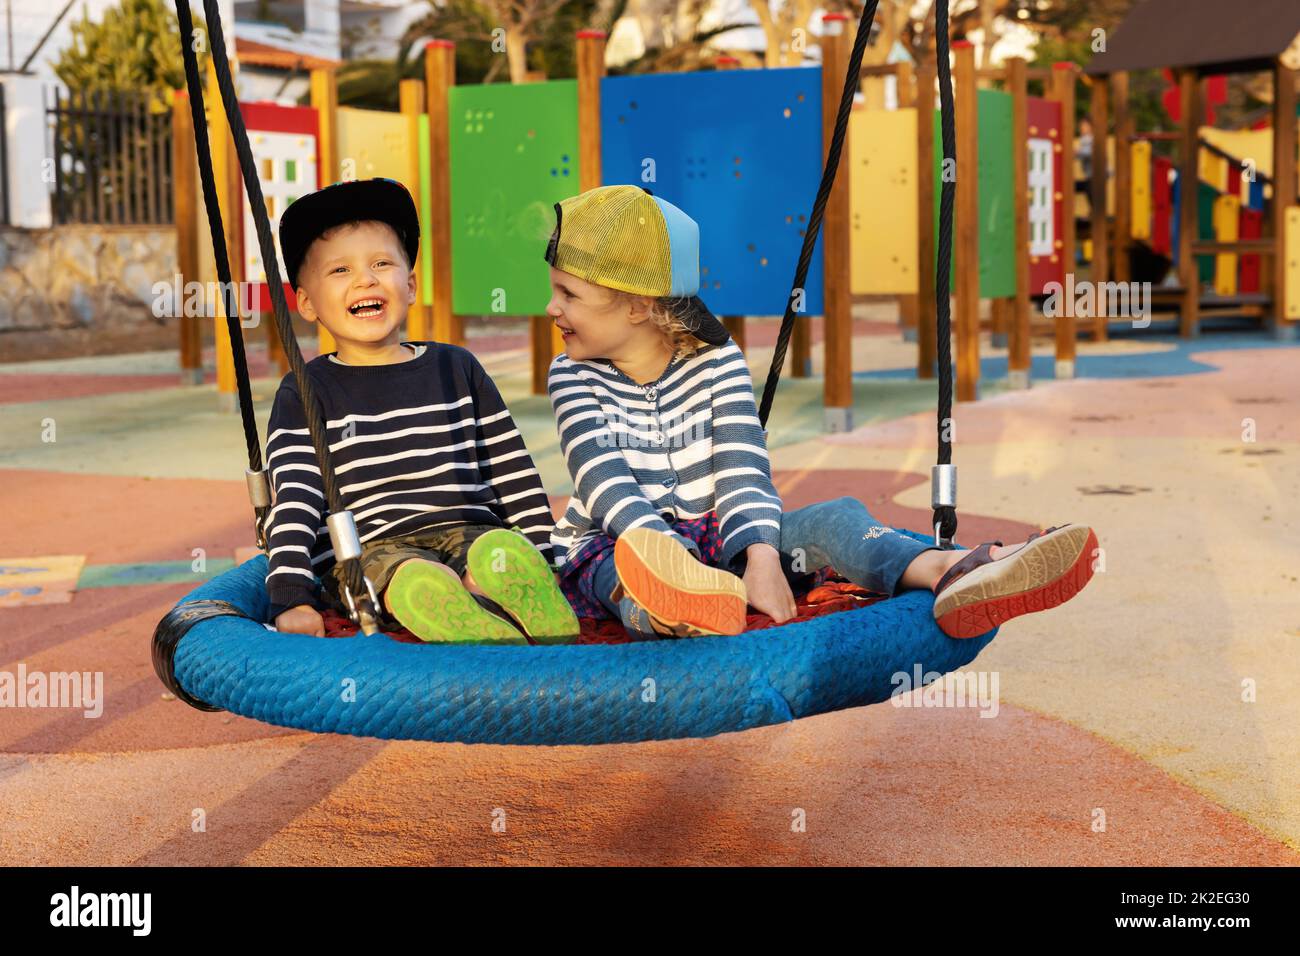 cheerful children having fun in playground basket swing Stock Photo